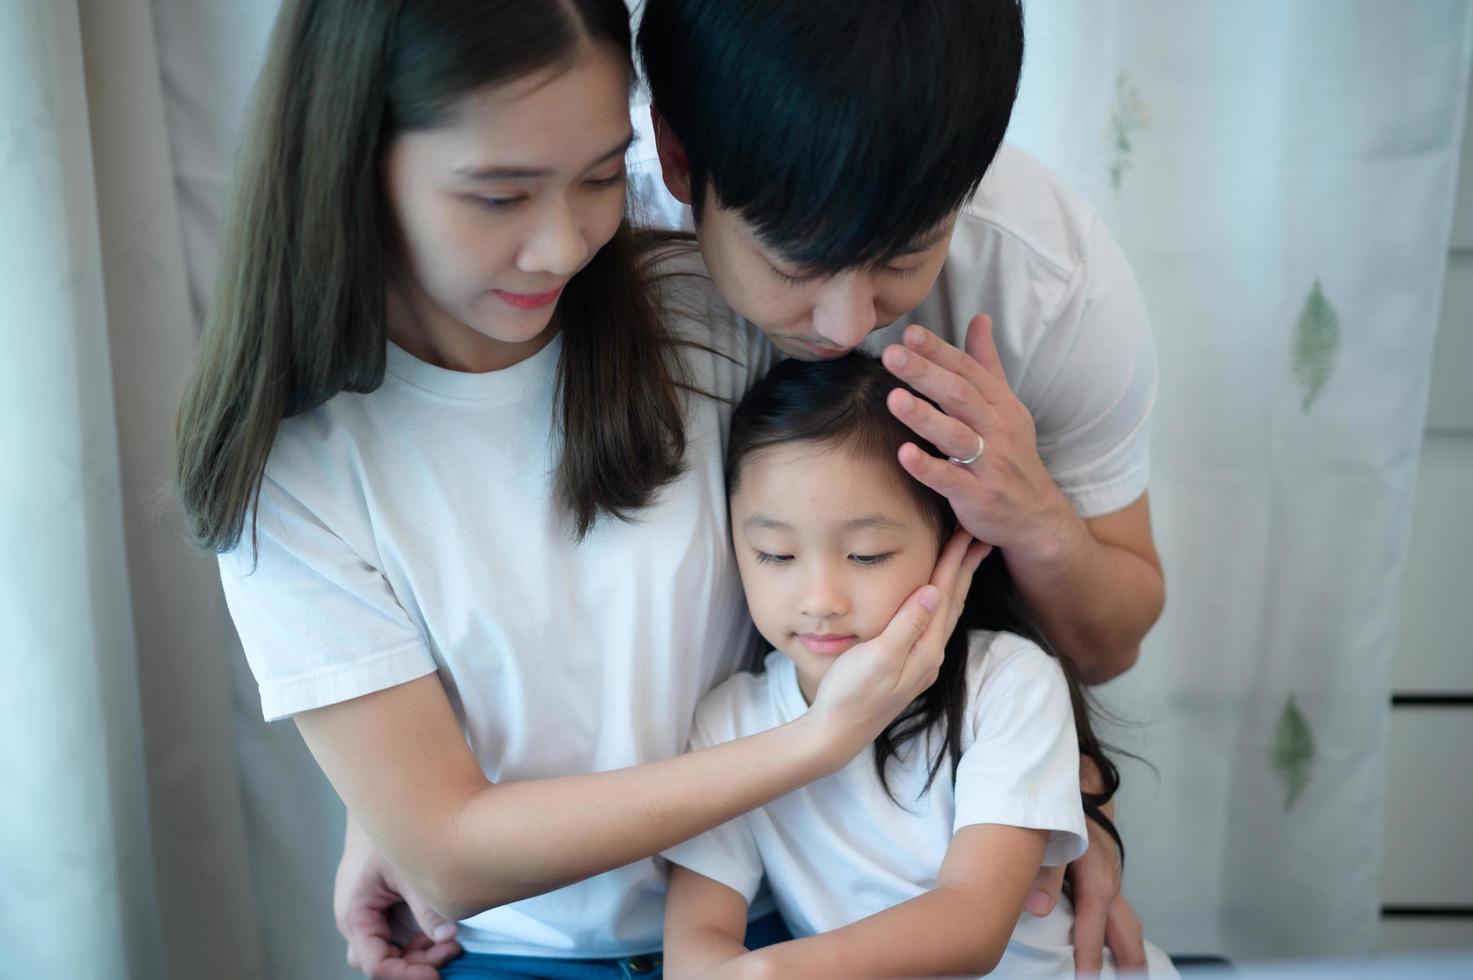 vacaciones familiares, padre y madre ayudando a su hija a practicar en sus clases de piano foto